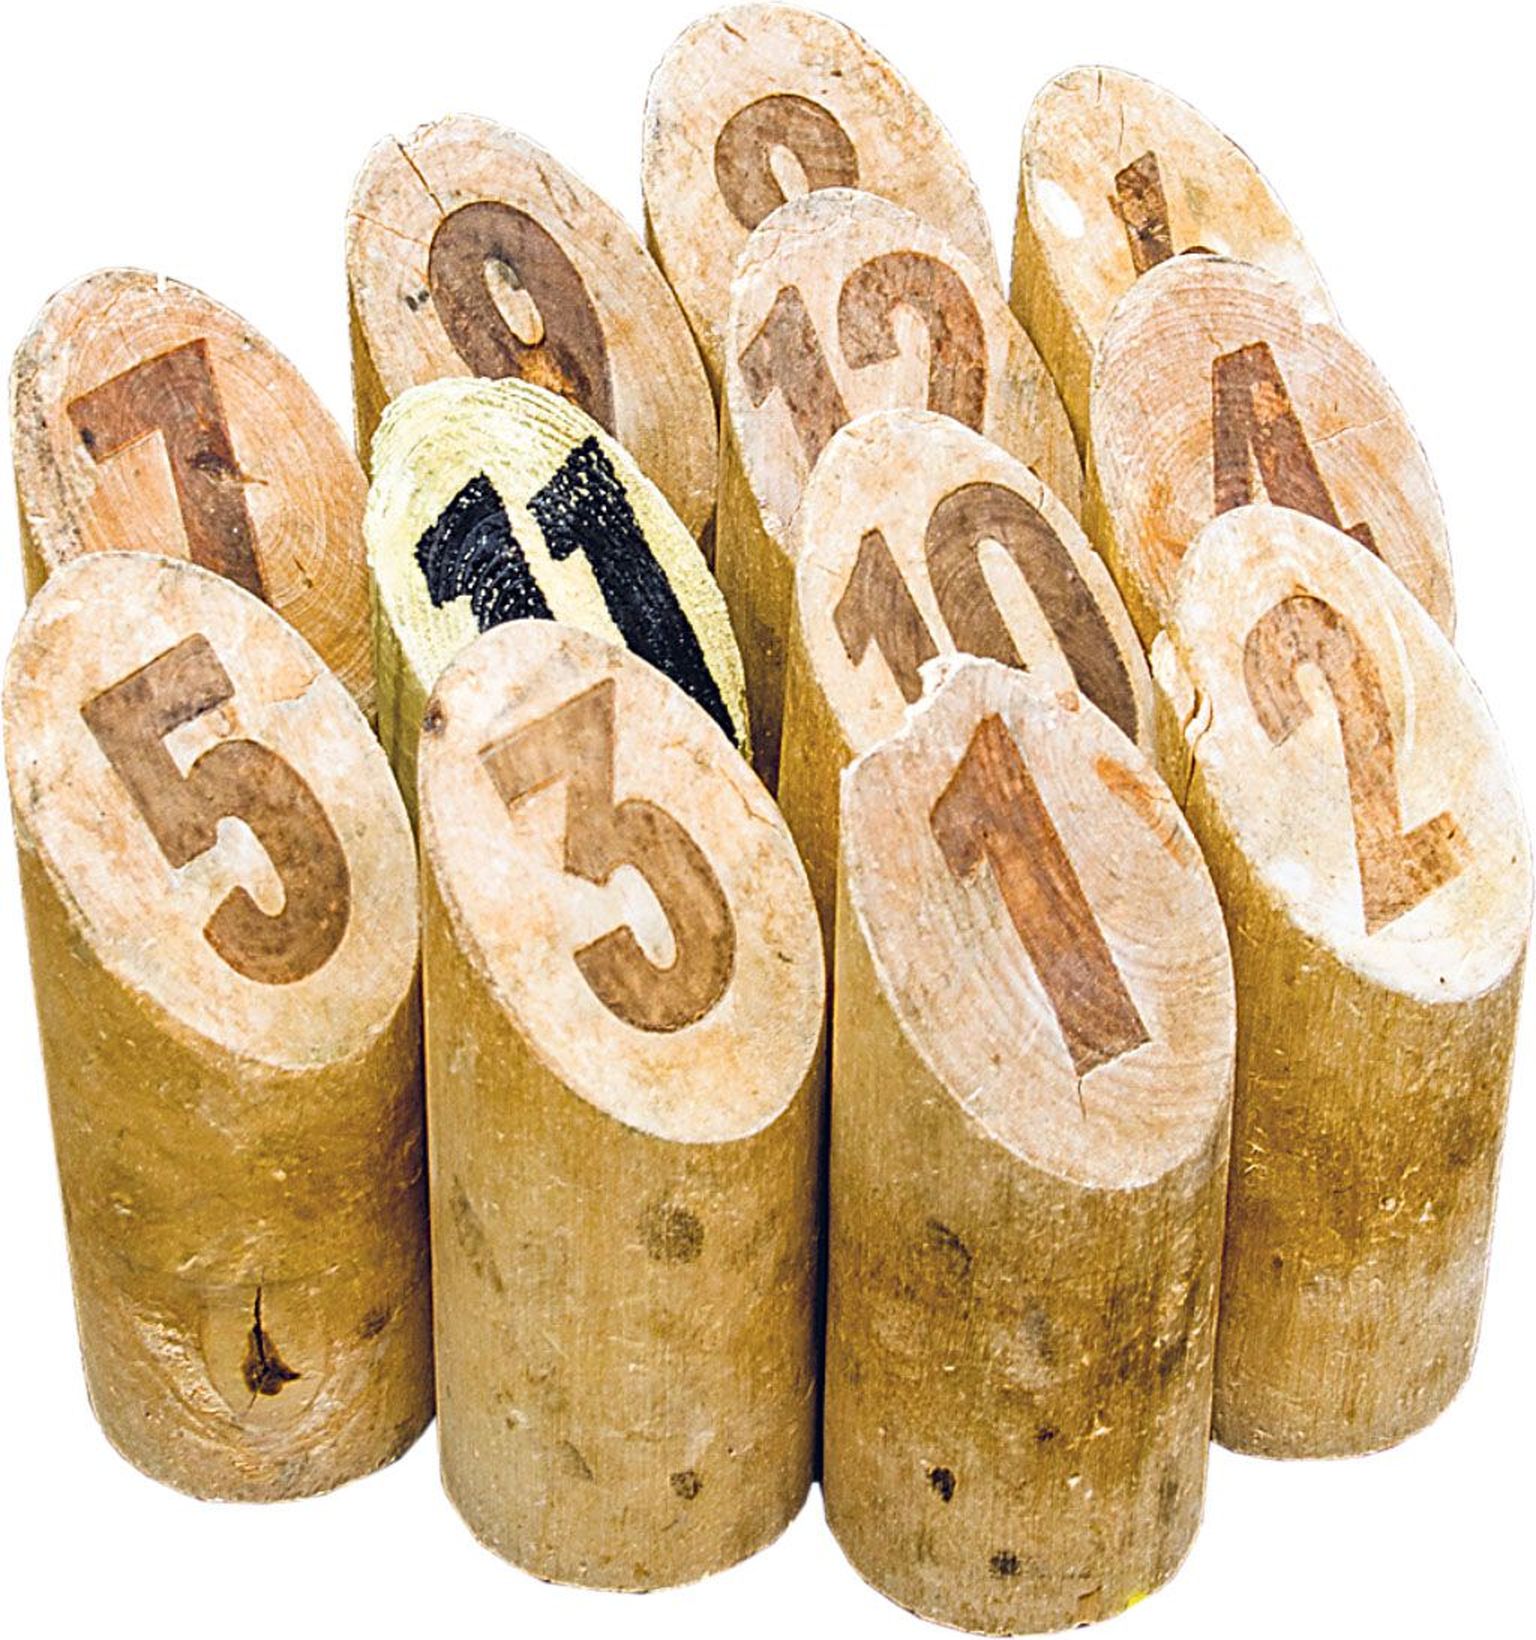 Mölkky-mängus kasutatakse kahtteist nummerdatud kurni.